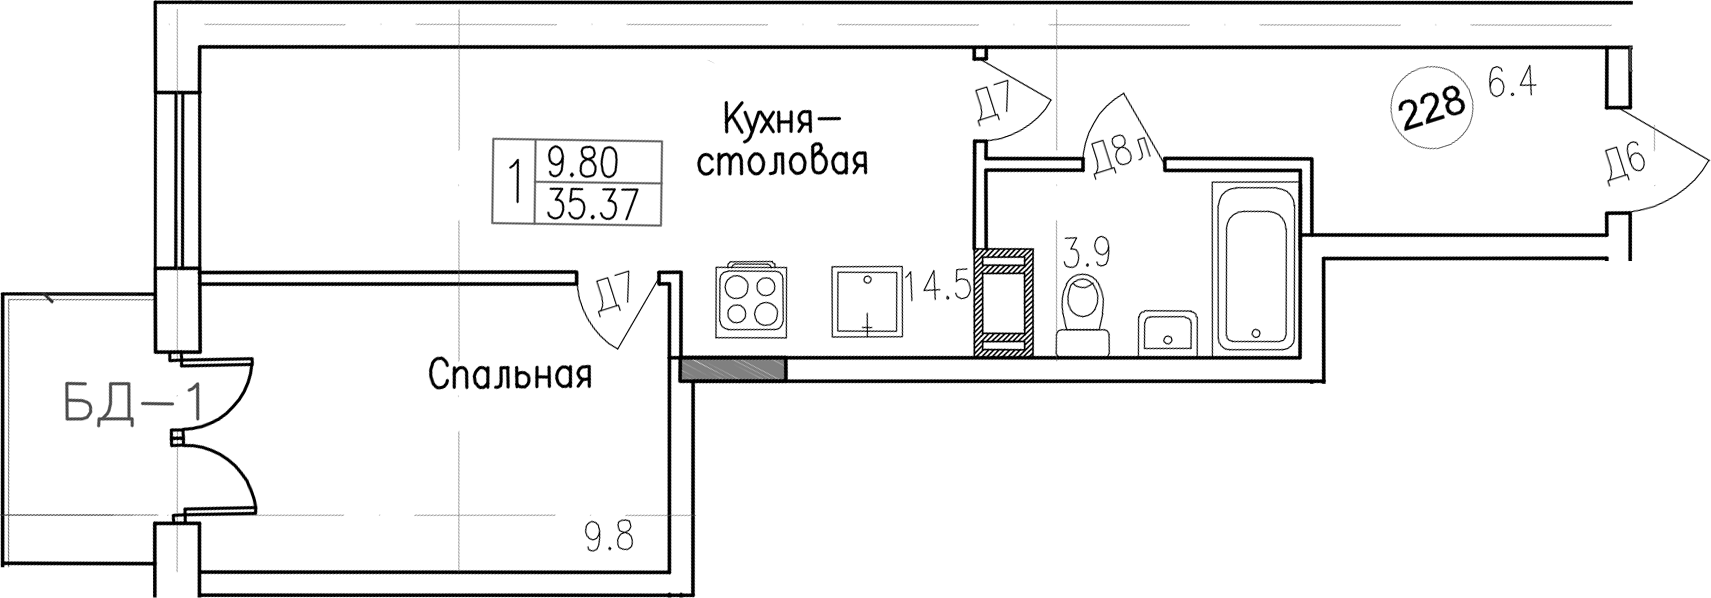 1-комнатная, 35.37 м²– 2